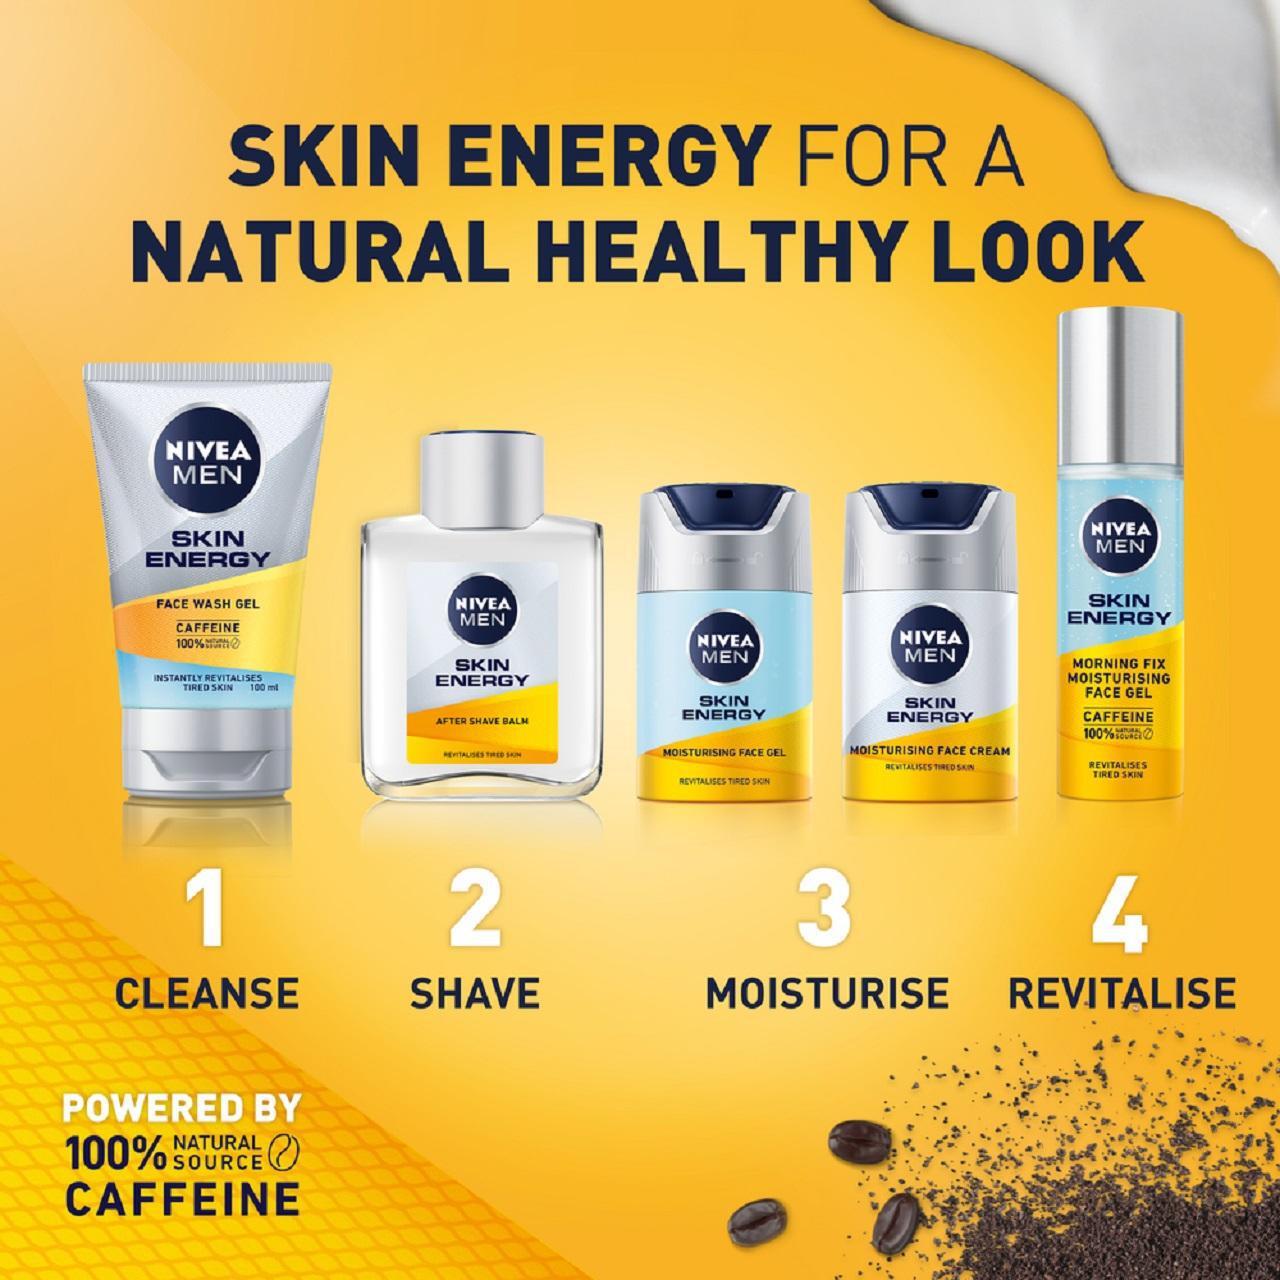 NIVEA MEN Active Energy Skin Revitaliser Face Cream 50ml